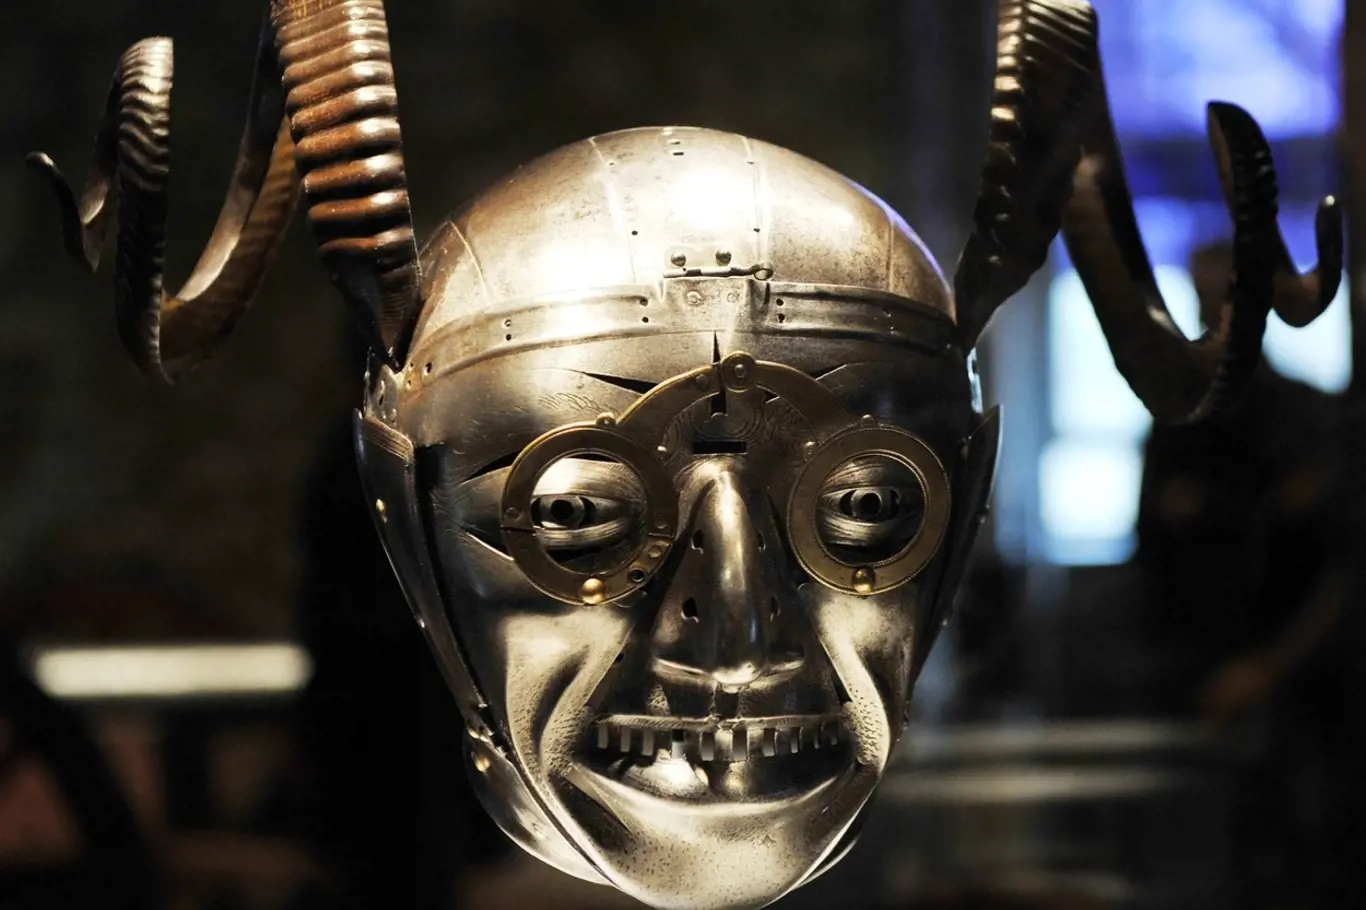 Pověstná a velmi "originální" rohatá helma Jindřicha VIII. od nejslavnějšího zbrojíře Konrada Seusenhofera